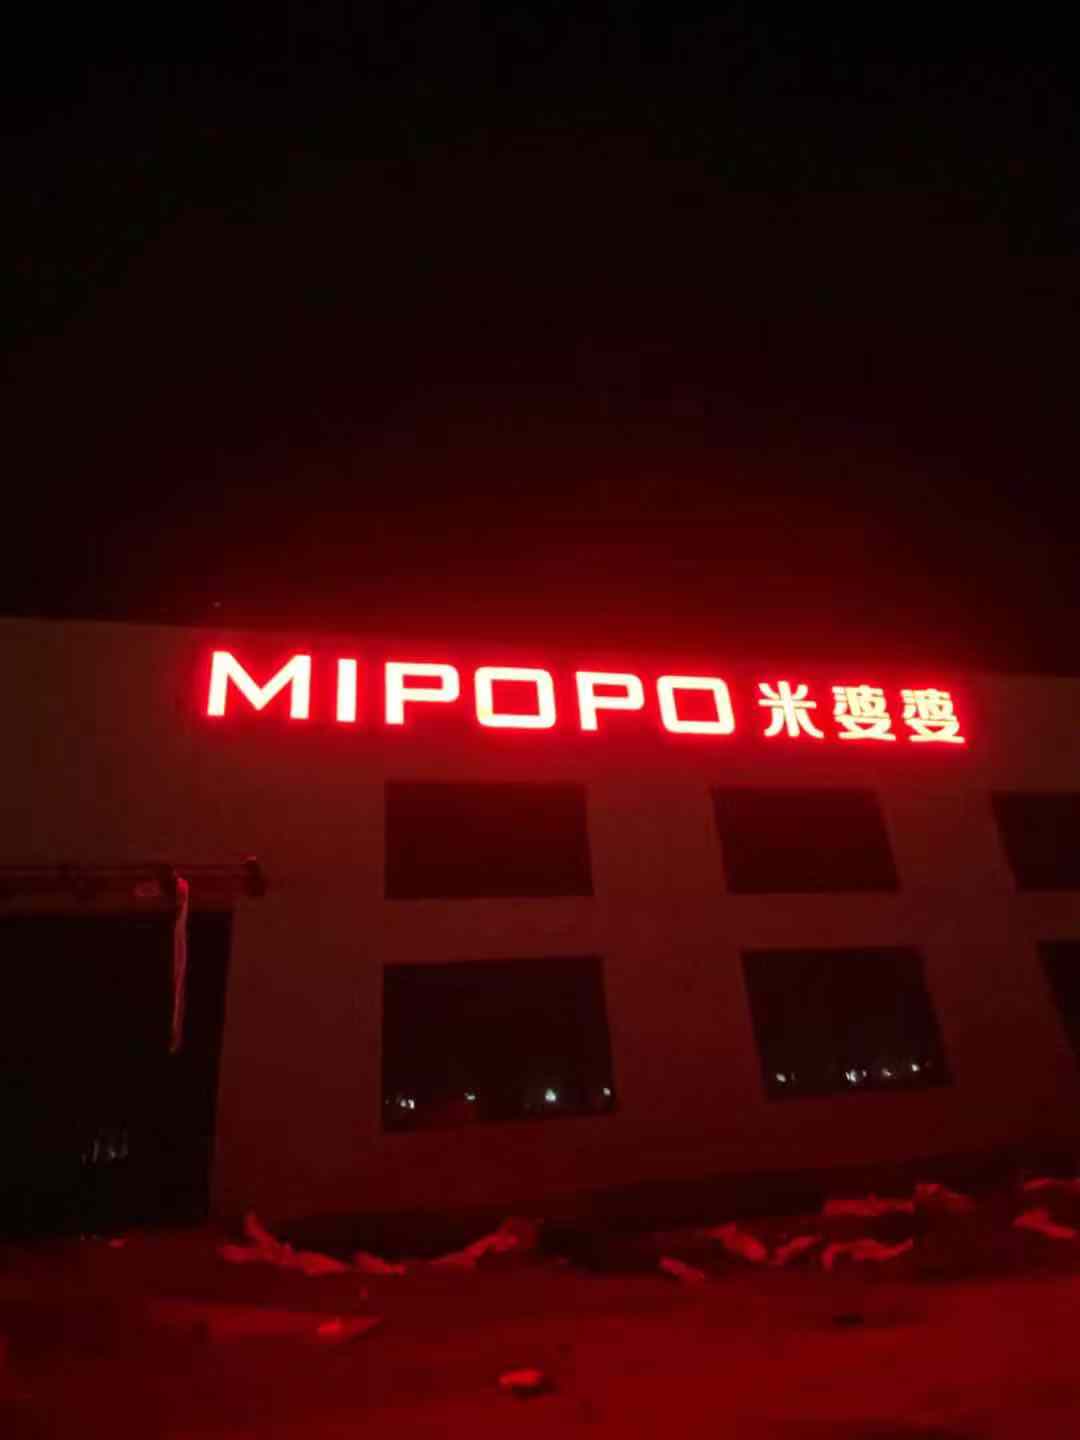 孝感MIPOPO米婆婆工厂楼体大型外露冲孔发光字制作安装案例